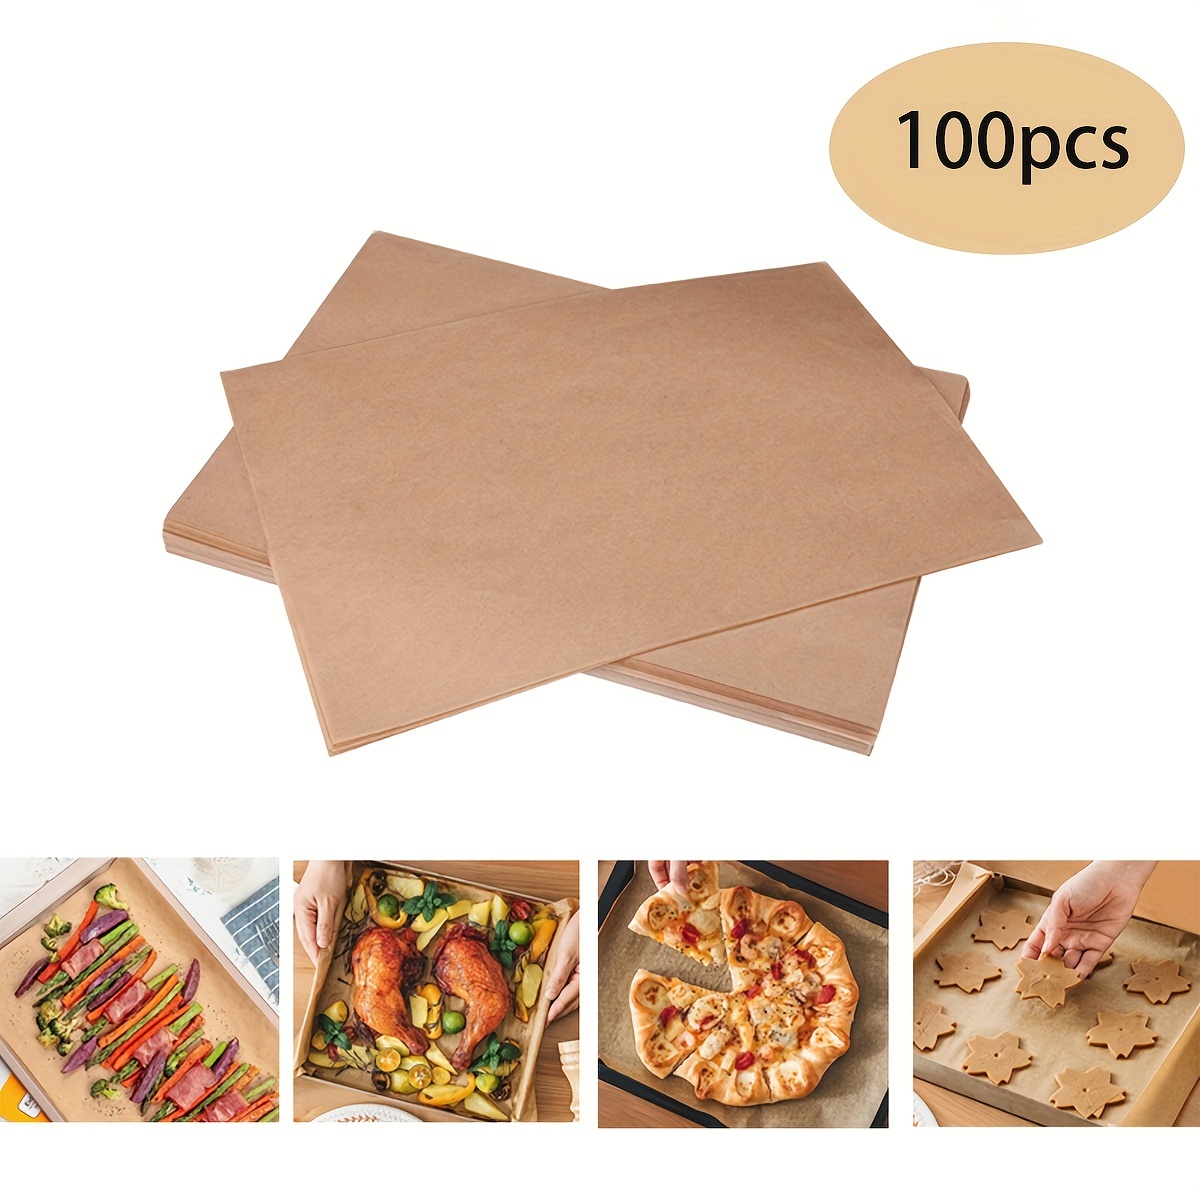 100pcs Parchment Paper Baking Sheets Non-Stick Precut Suitable